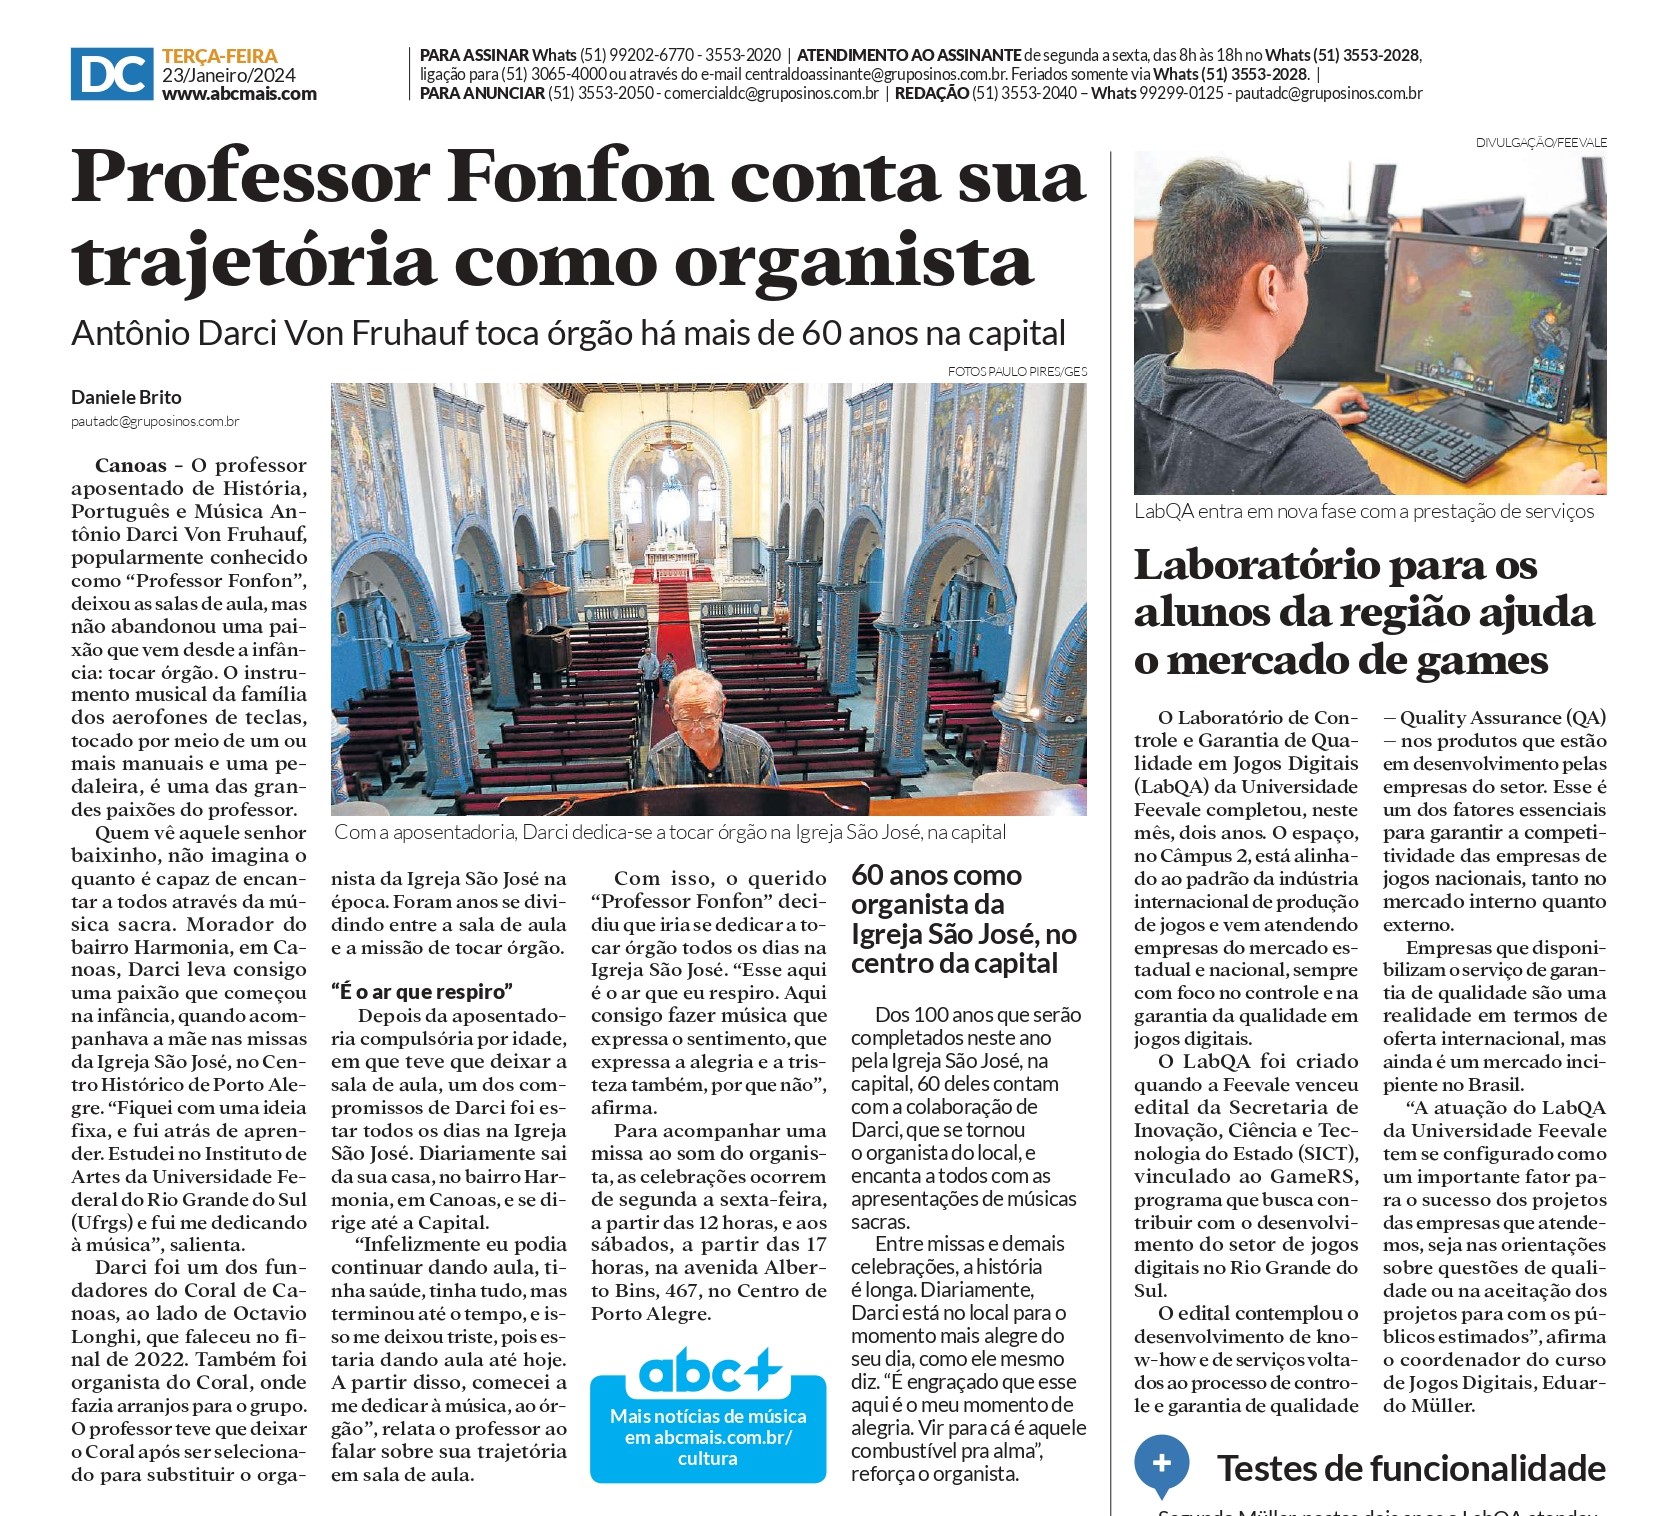 Trajetória do organista da Igreja São José é tema de reportagem do Diário de Canoas